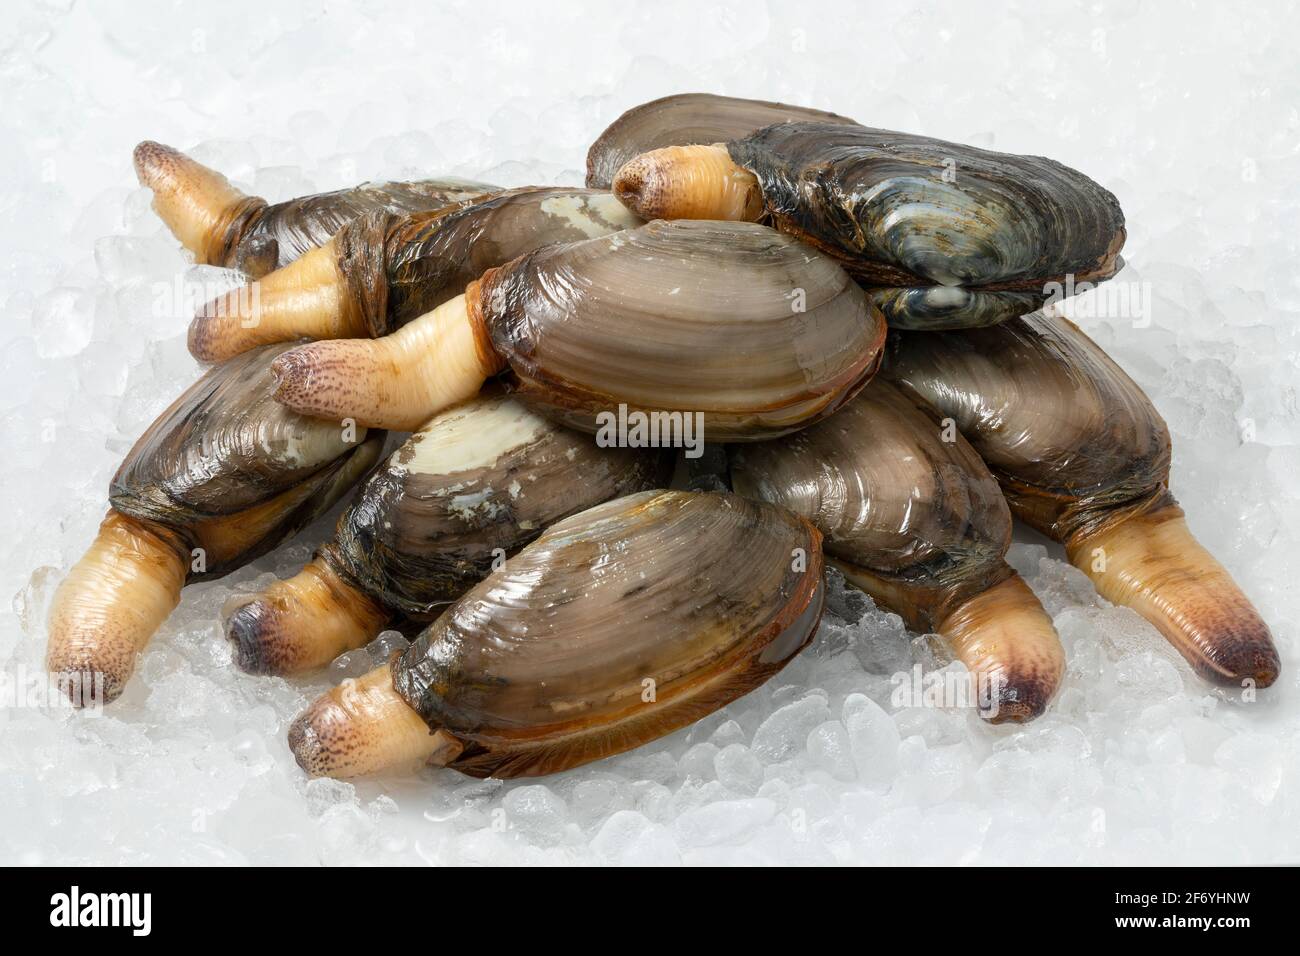 Ein Haufen frischer roher, lebender Muscheln, eine essbare Salzwassermuschel, auf Eis Stockfoto